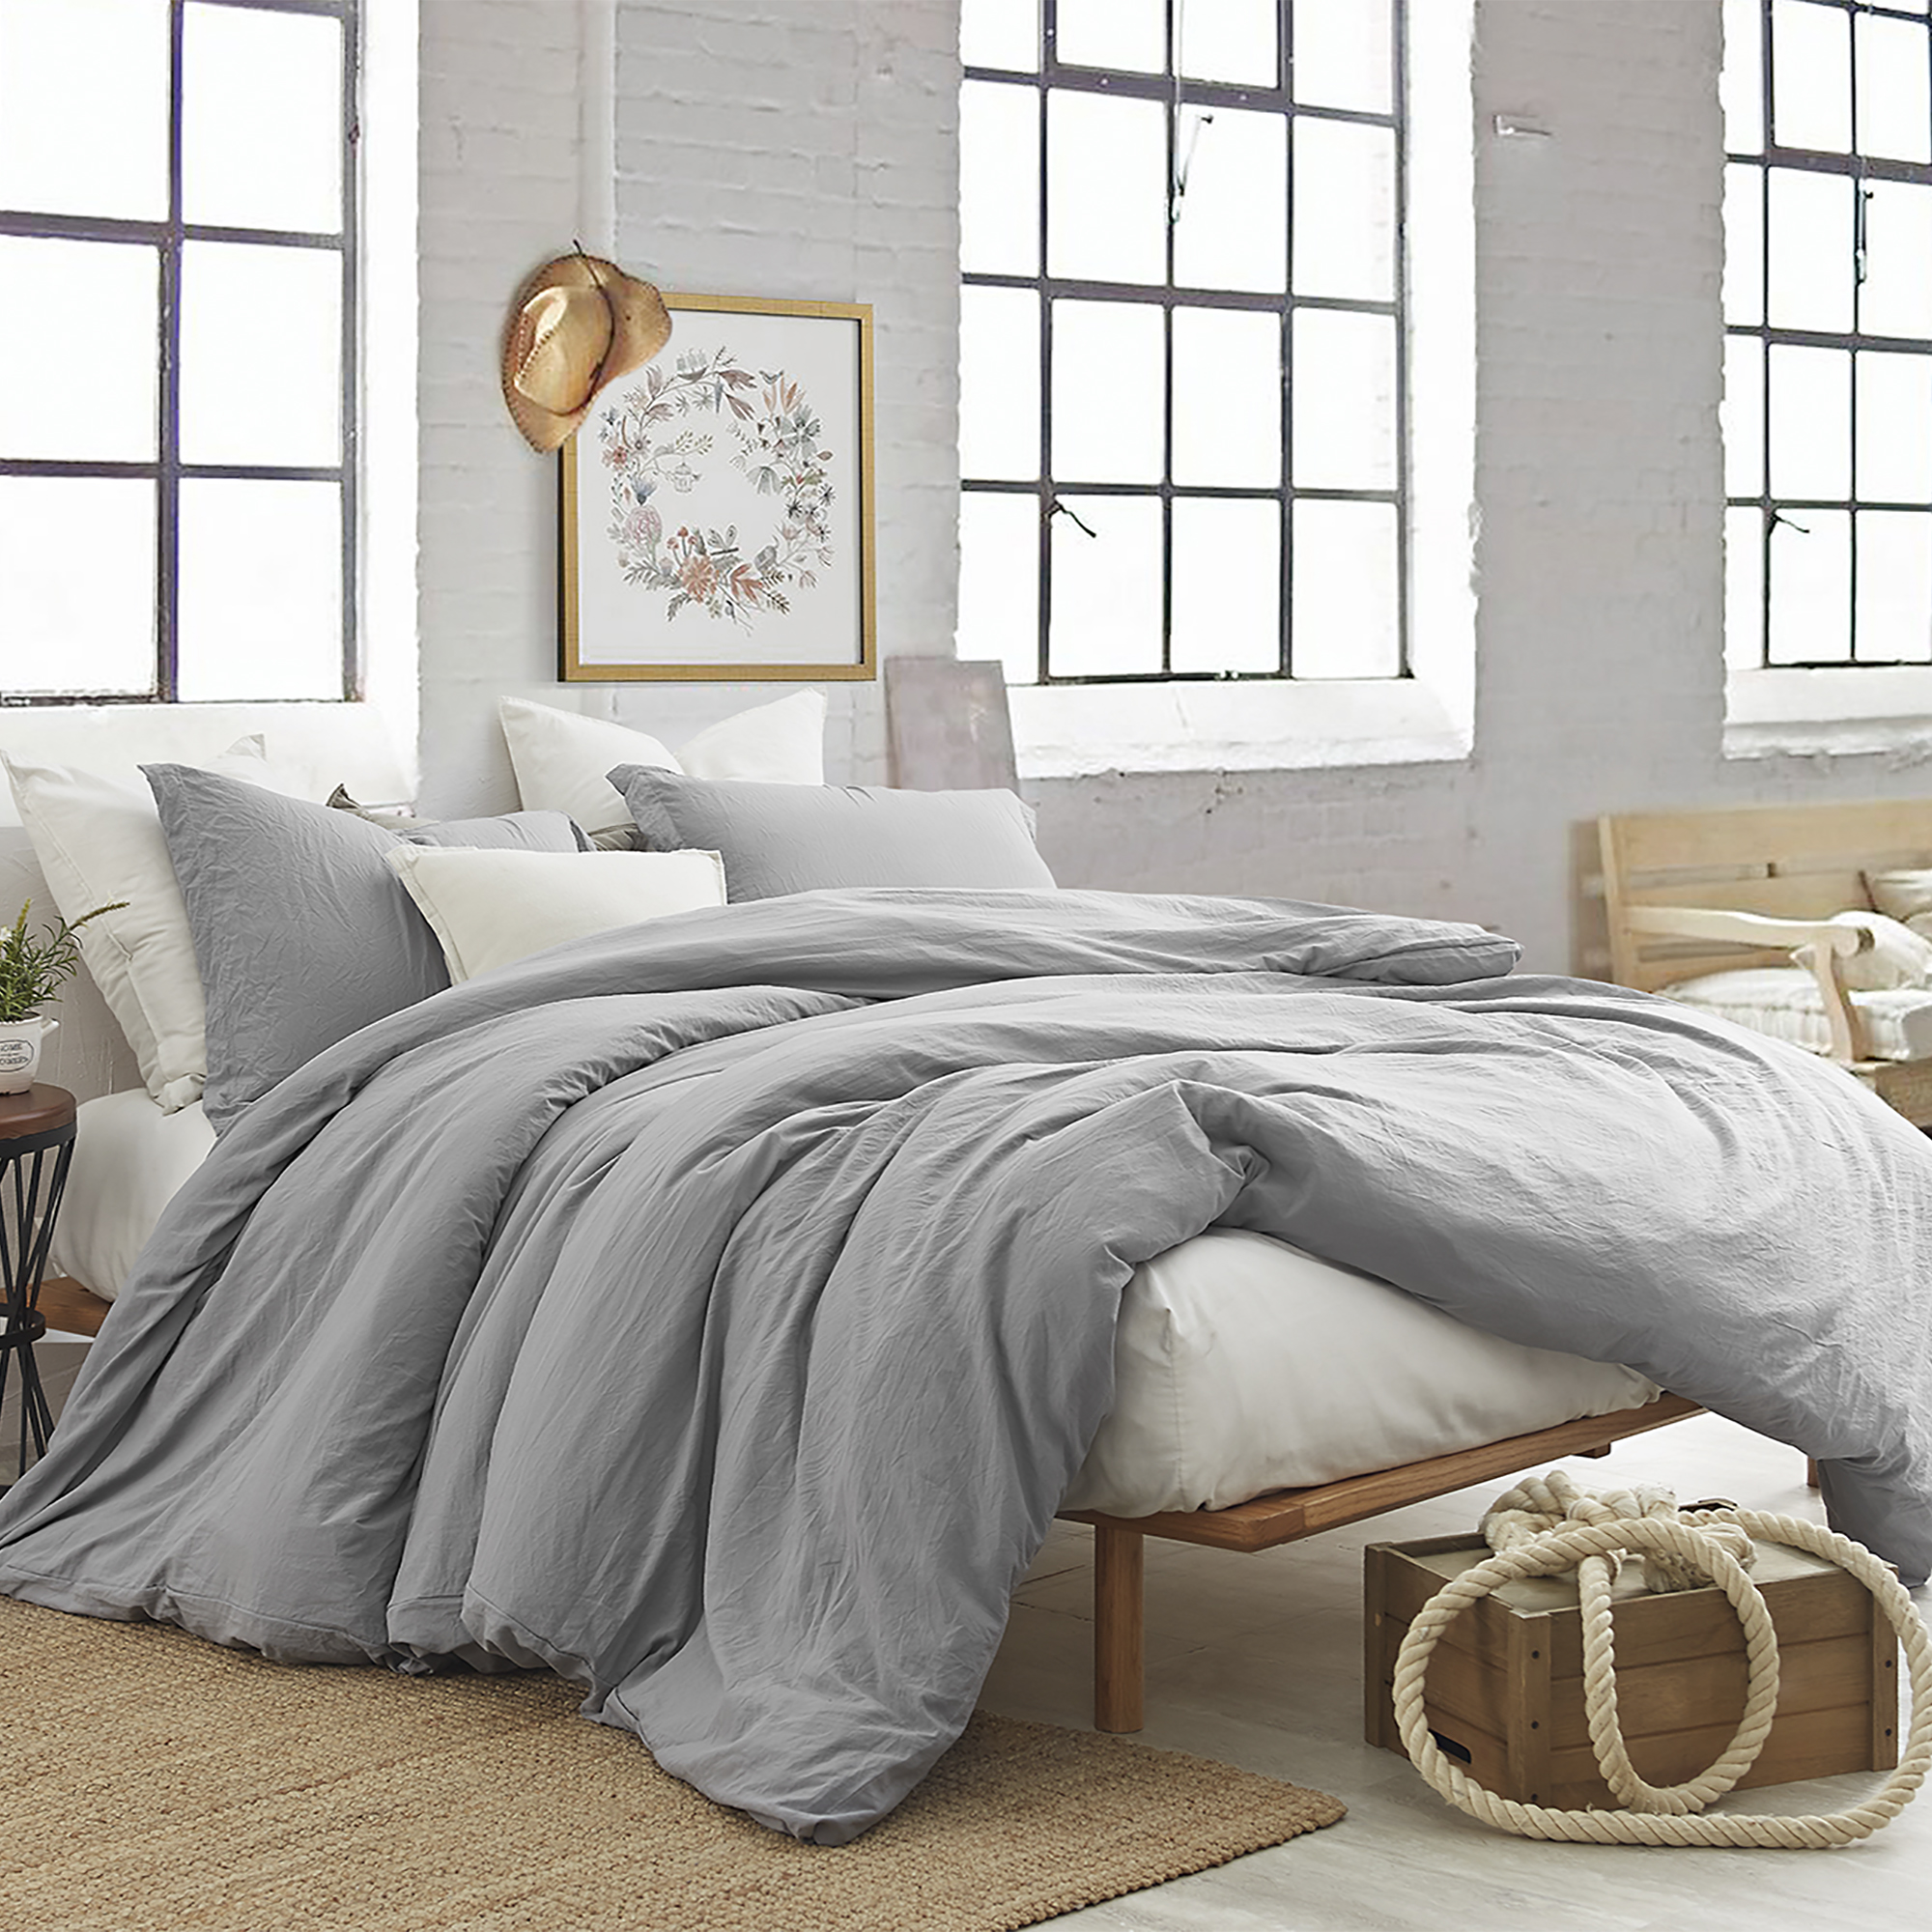 Soft Microfiber Queen Oversized Comforter XL Duvet Cover Standard Pillow Sham Set